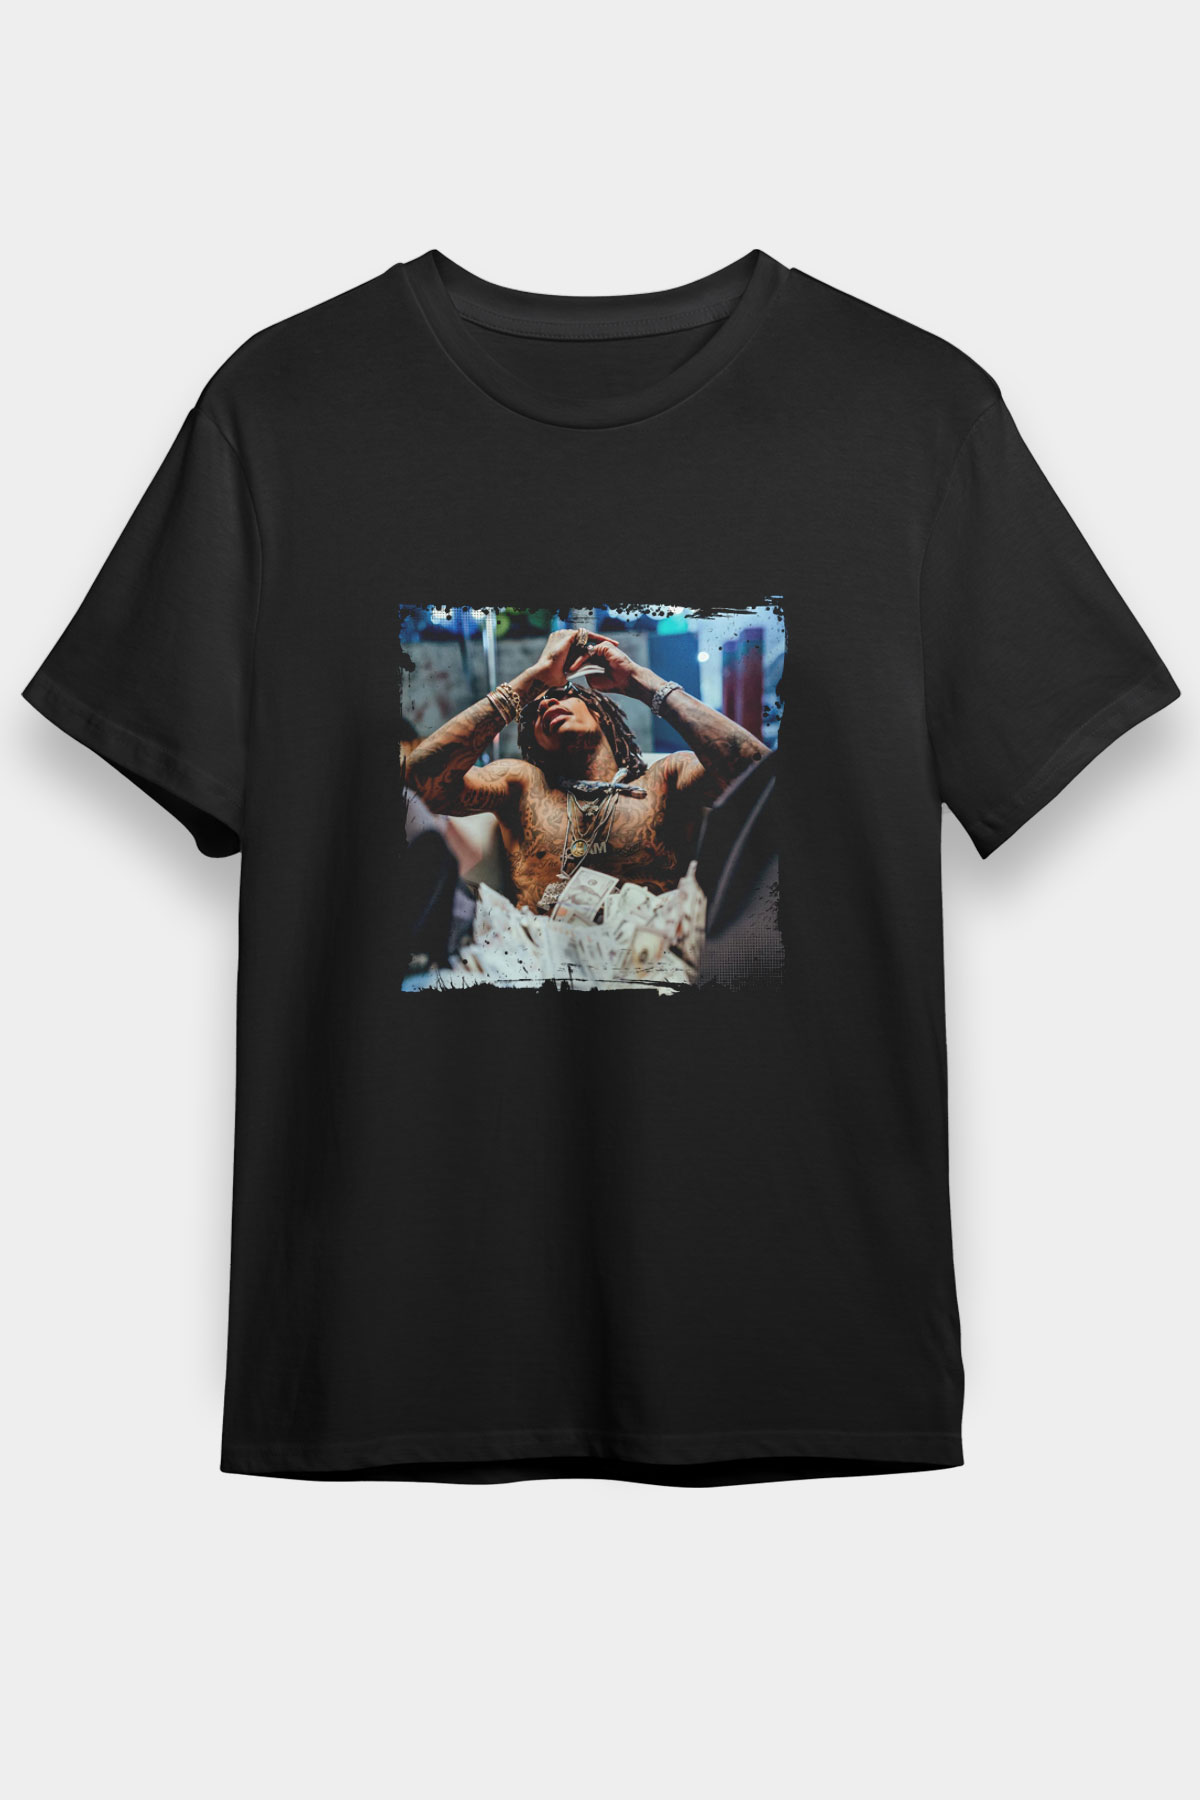 Wiz Khalifa T shirt,Hip Hop,Rap Tshirt 04